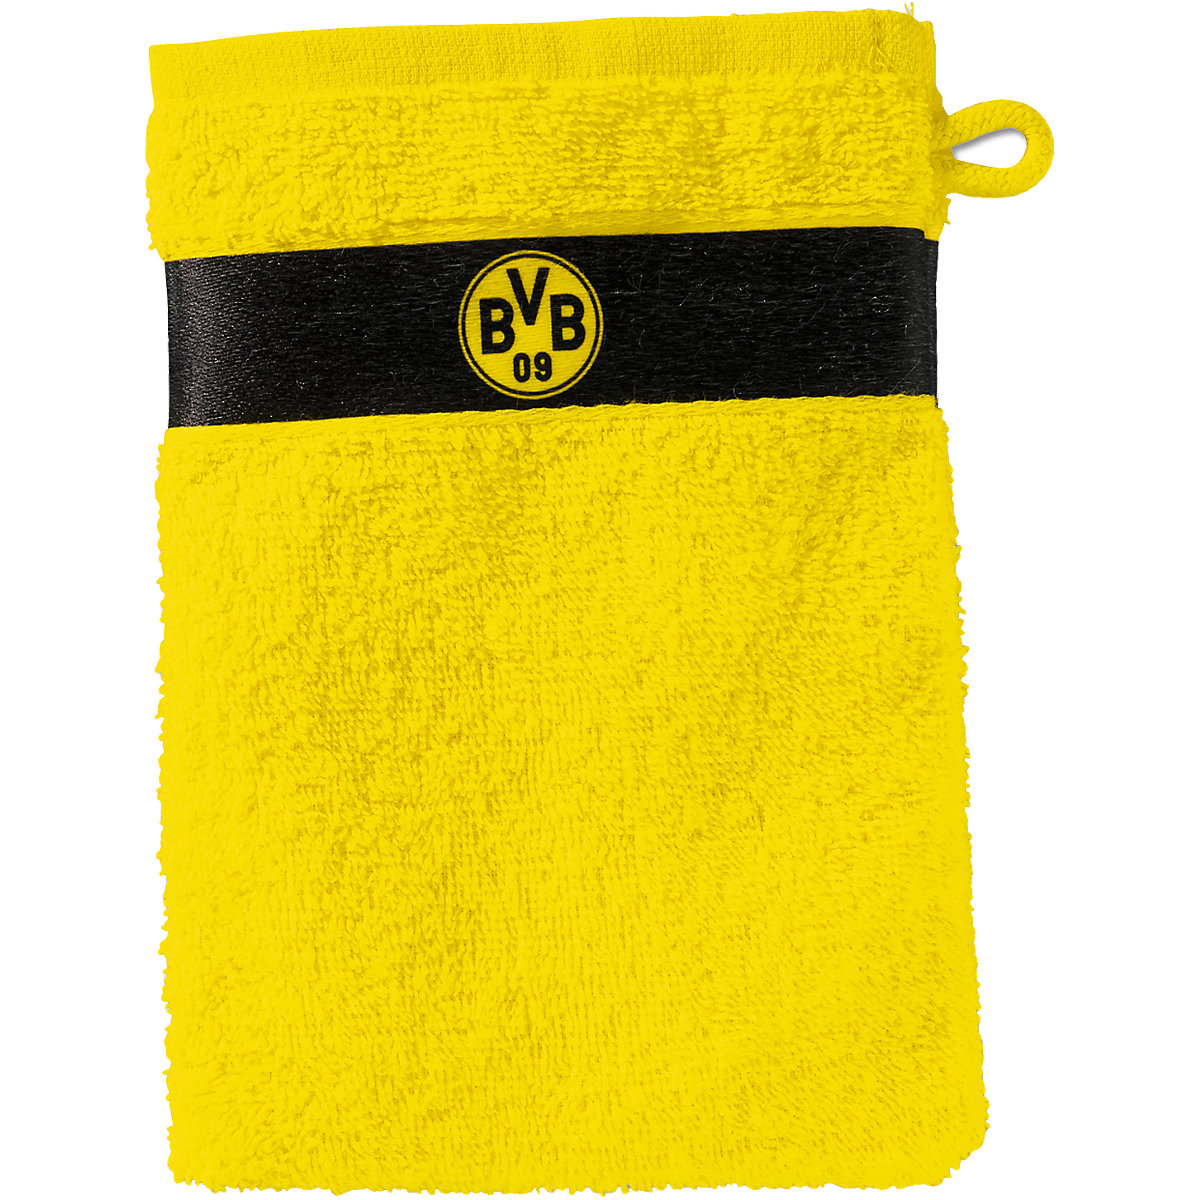 Waschhandschuh BVB gelb 16 x 21 cm